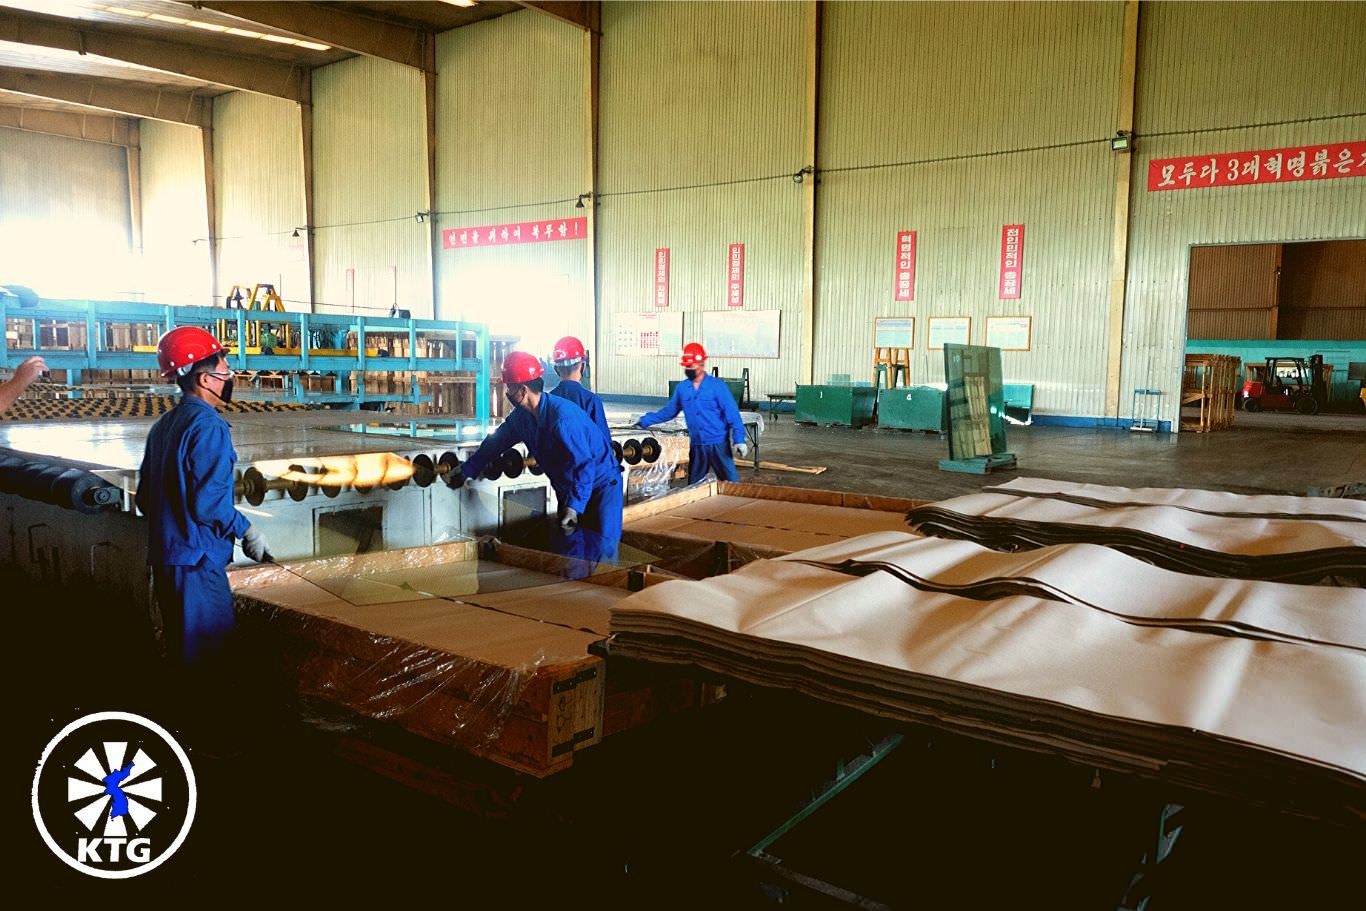 Fábrica de producción de vidrios Taen, cerca de la ciudad de Nampo en Corea del Norte. Viaje organizado por KTG